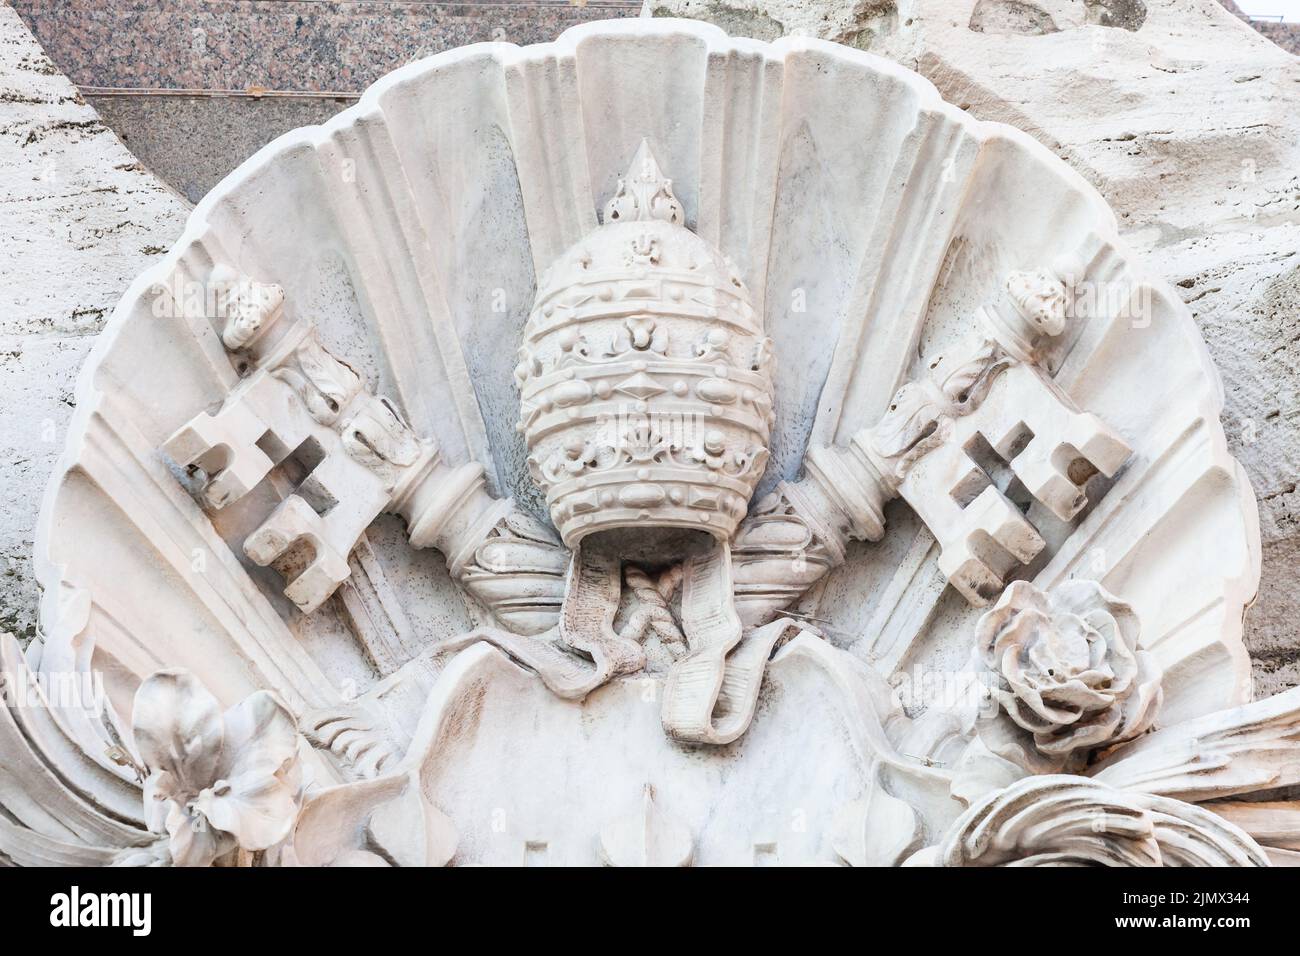 Symbole de l'État du Vatican - deux clés croisées et une tiara, État de la Cité du Vatican. Banque D'Images